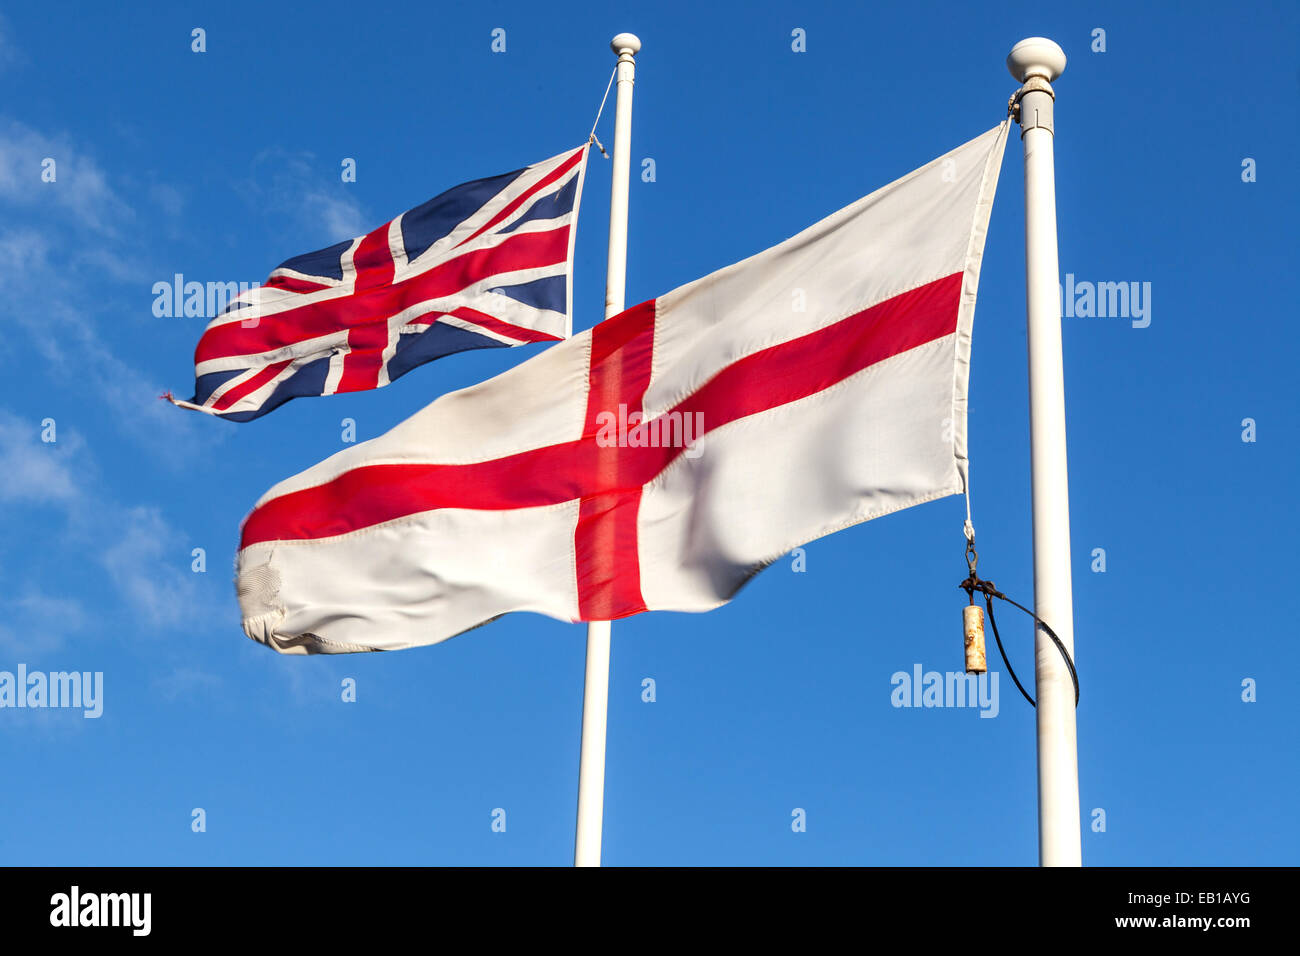 Flaggen von Union Jack und England, die vom Wind auf ihren jeweiligen Flagstacks, London, England, Vereinigtes Königreich, geblasen werden Stockfoto